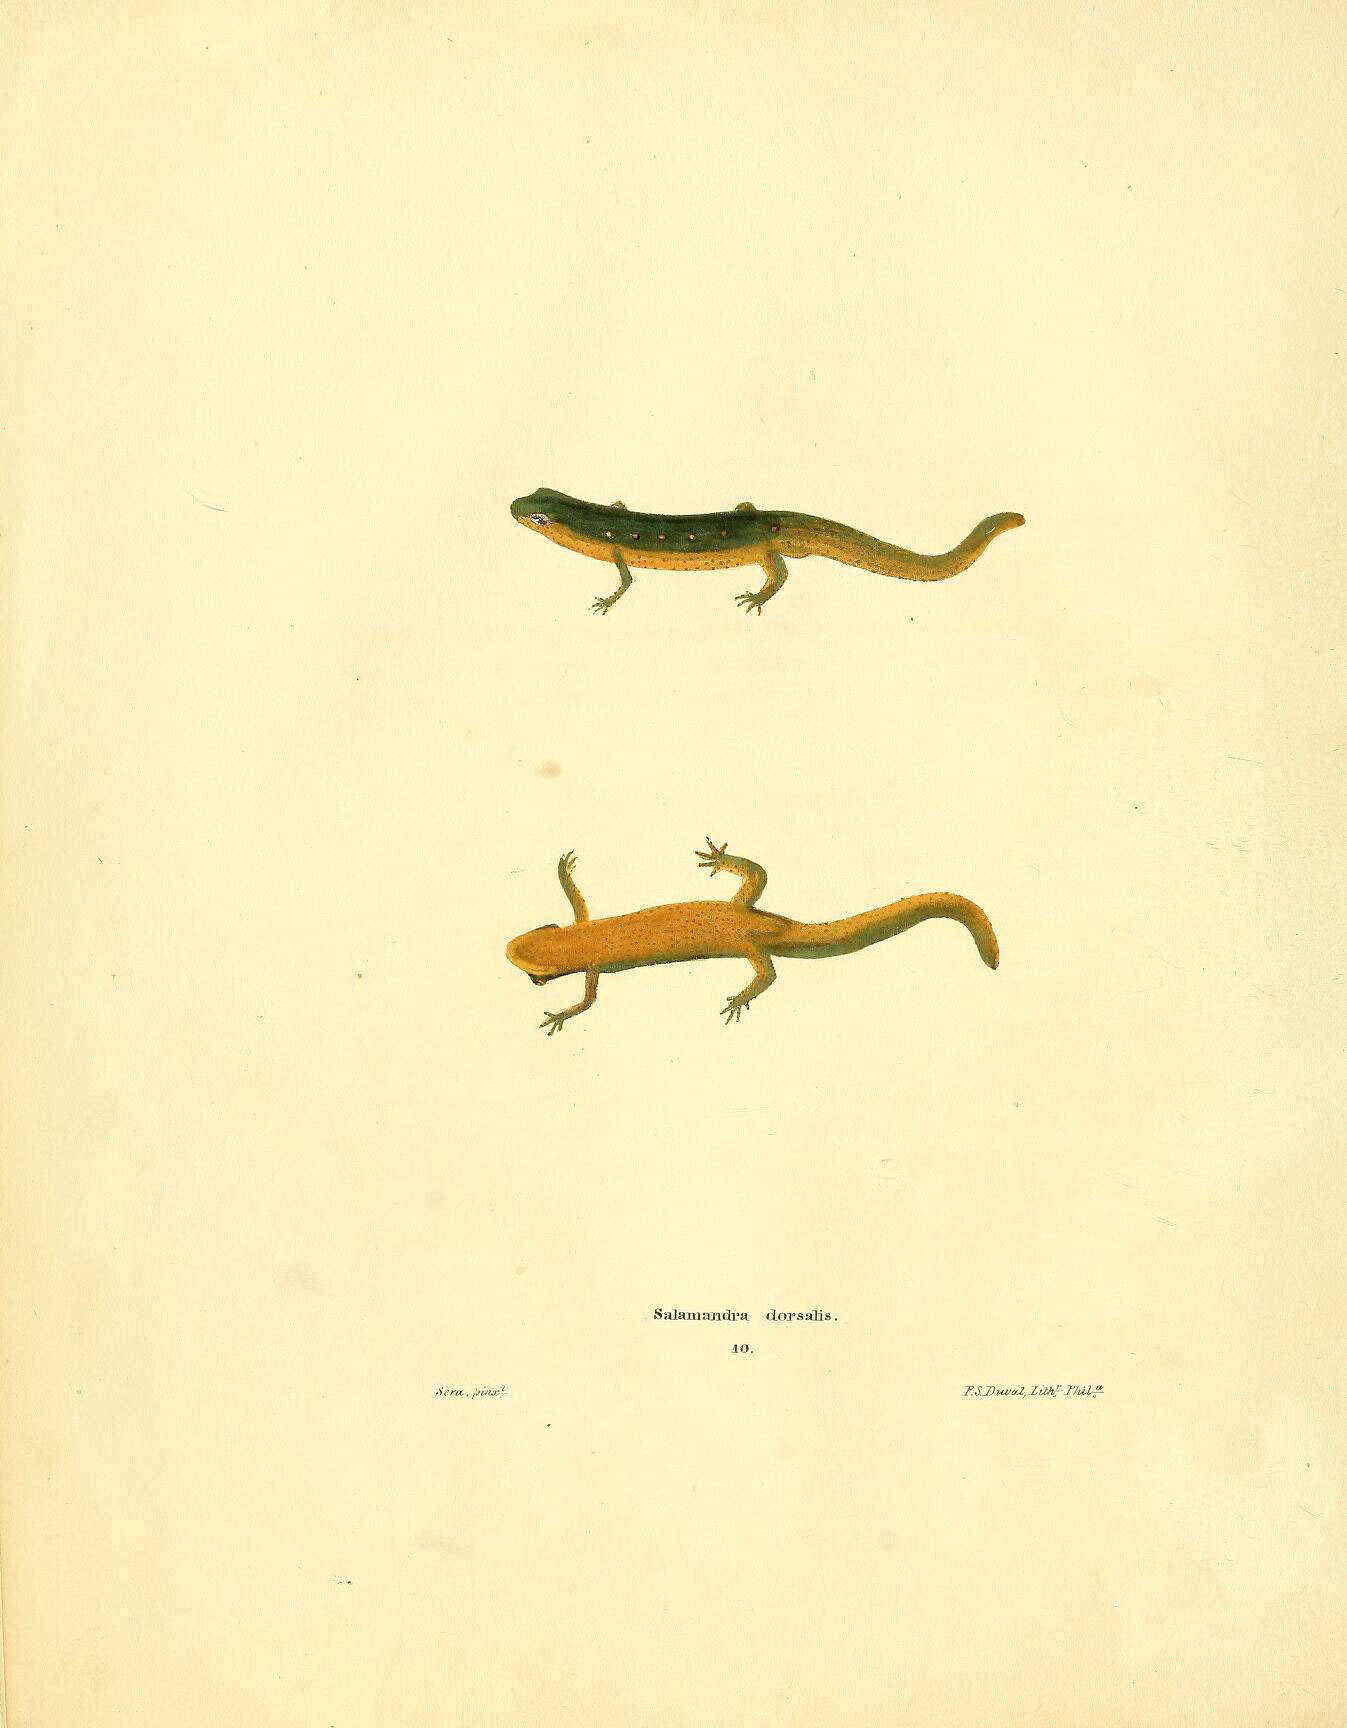 Sivun Notophthalmus Rafinesque 1820 kuva